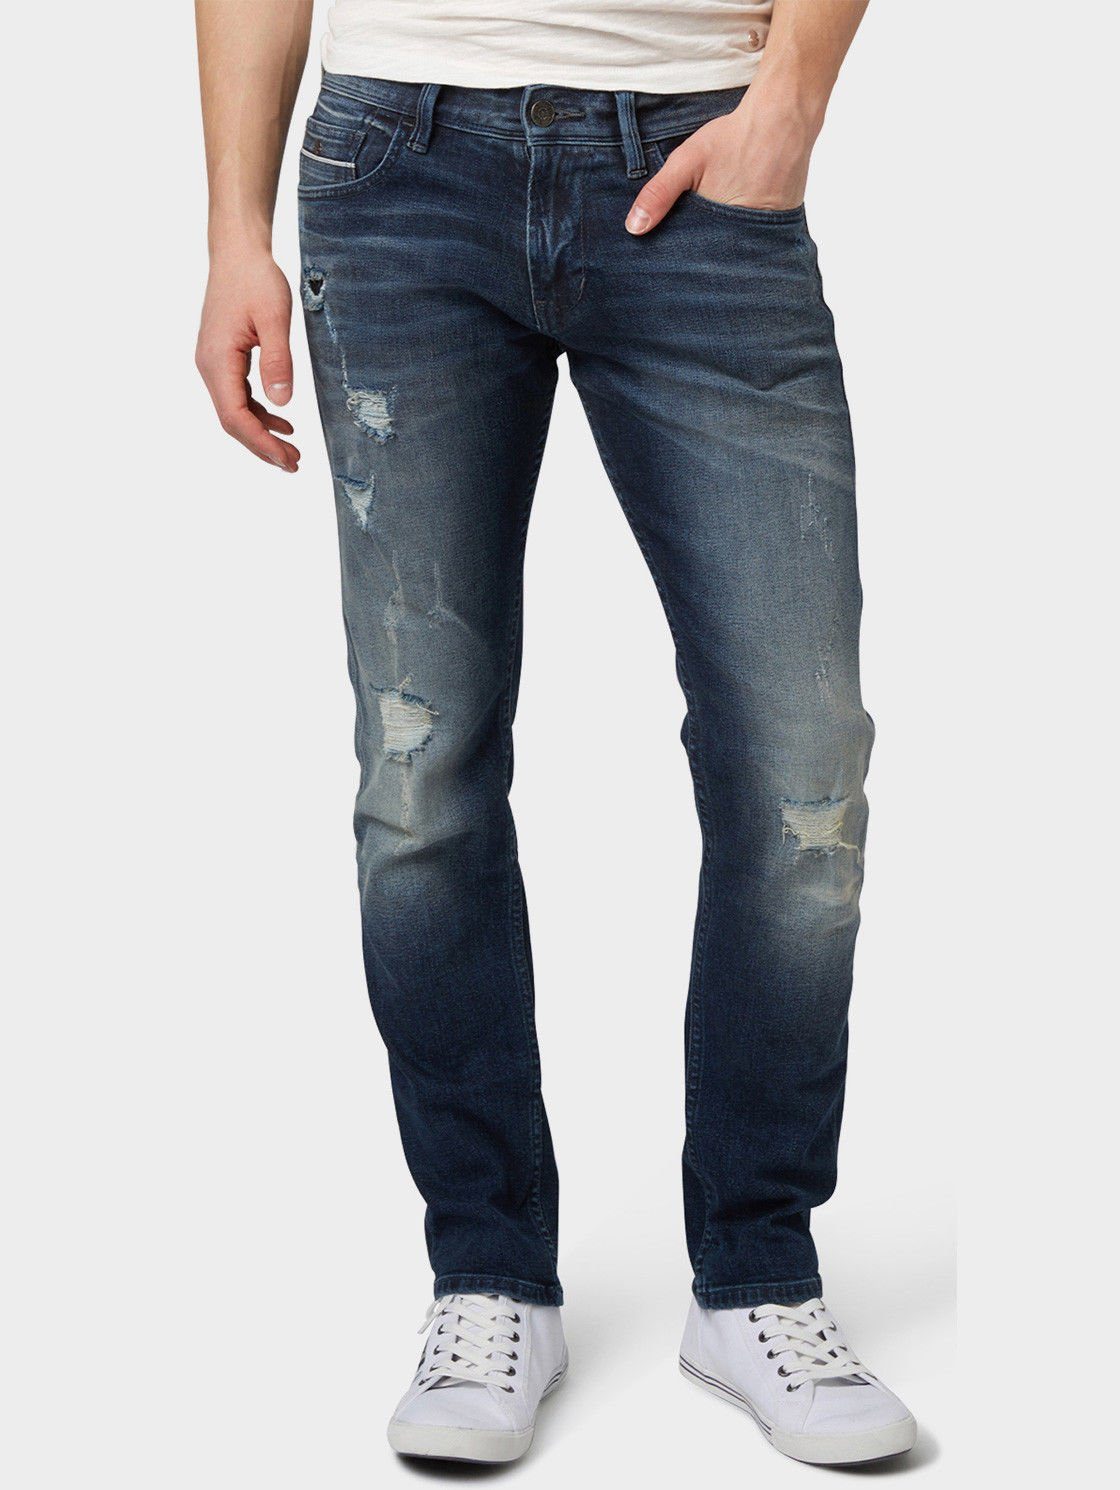 TOM TAILOR Slim-fit-Jeans Herren Selvage Stretch Denim Hose - Aedan 1075  online kaufen | OTTO